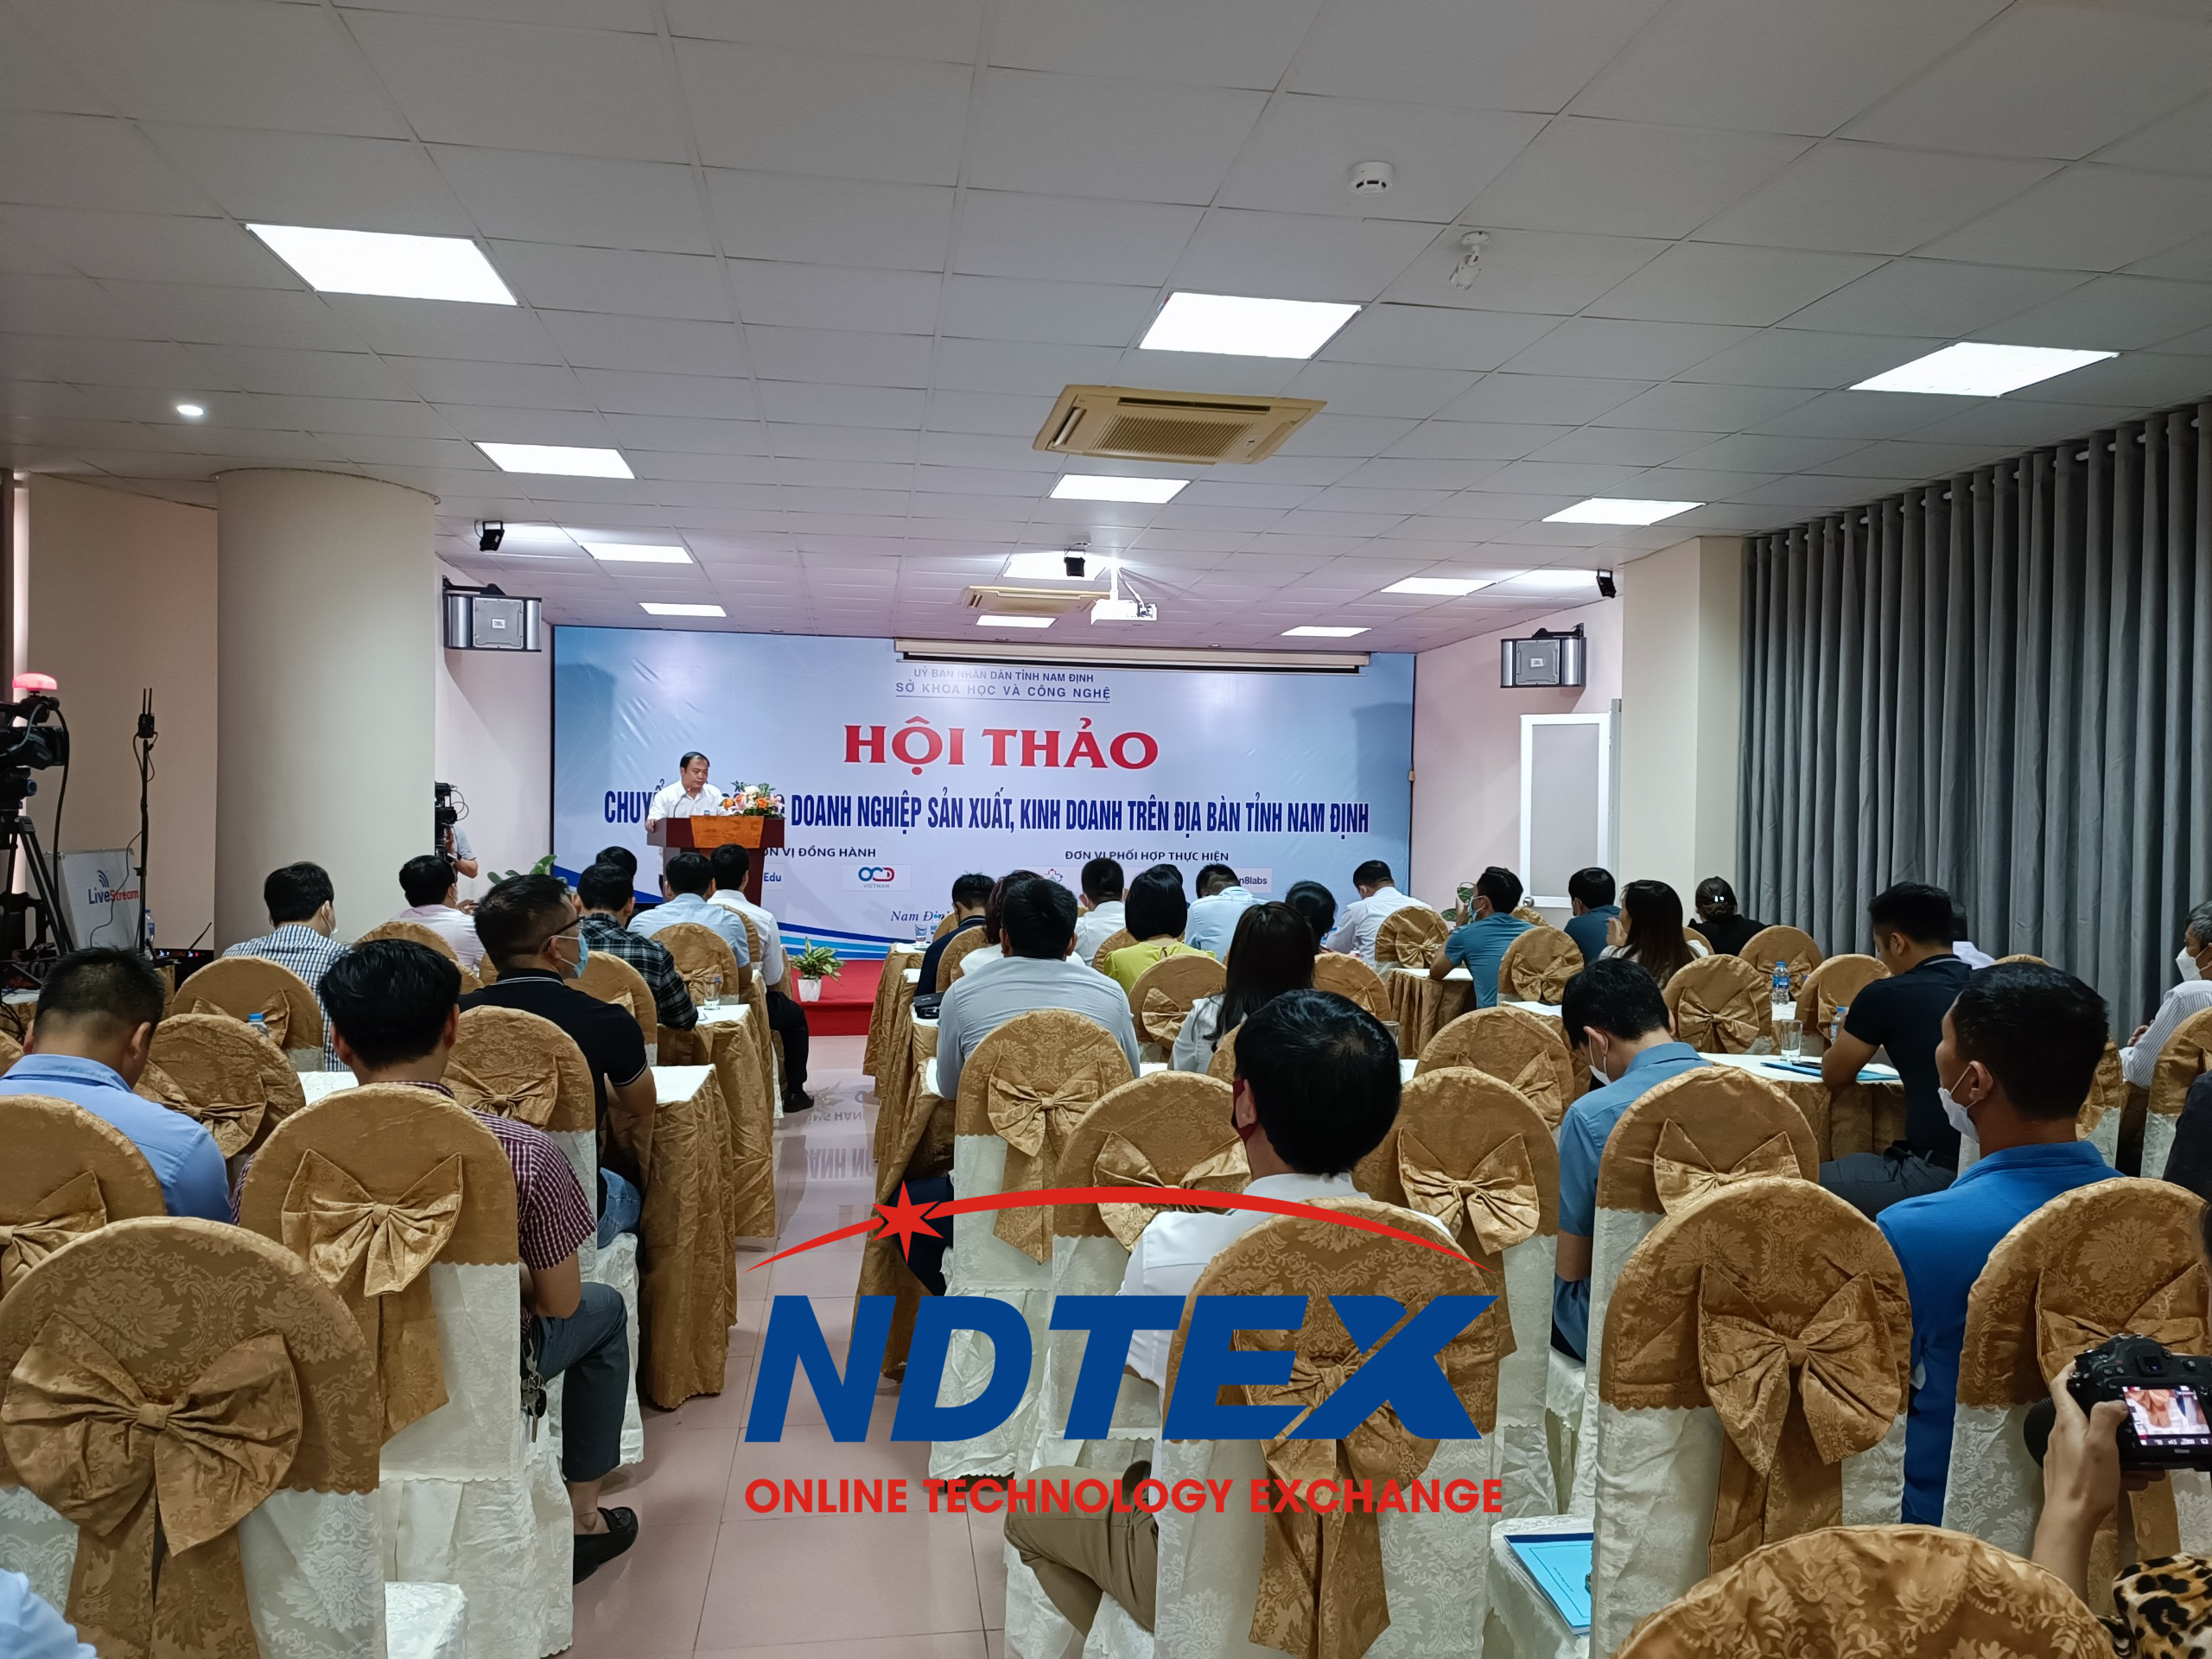 Hội thảo, Trình diễn: “Ứng dụng chuyển đối số trong doanh nghiệp sản xuất và kinh doanh trên địa bàn tỉnh Nam Định”